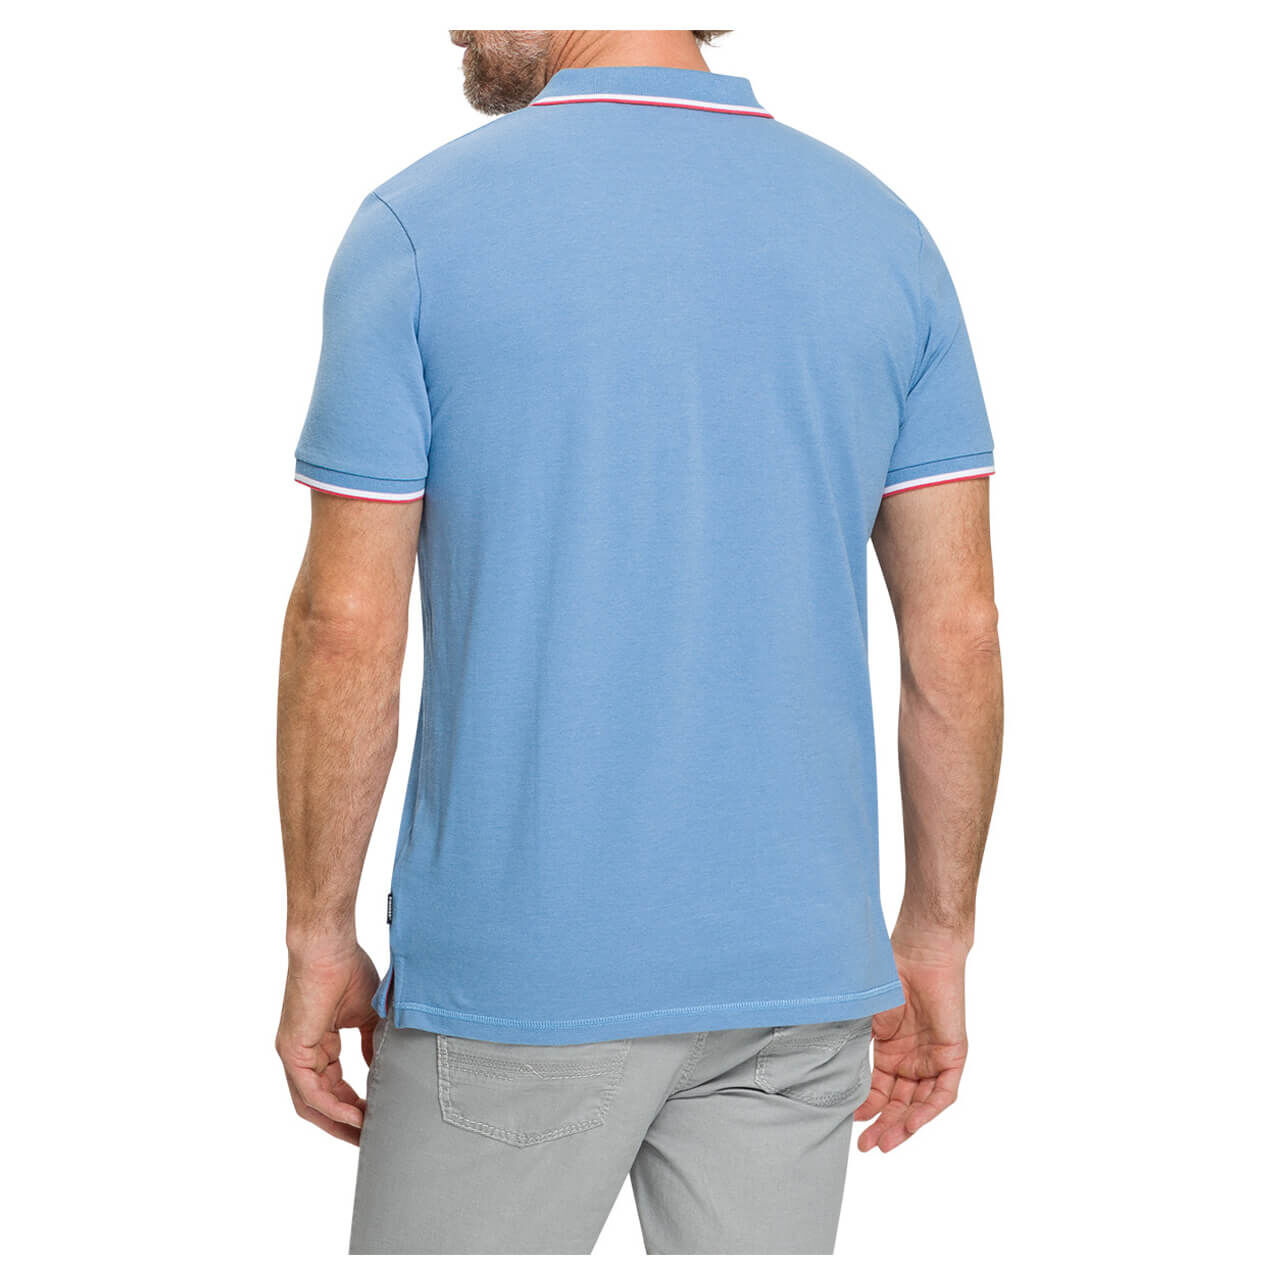 Pioneer Poloshirt für Herren in Blau meliert, FarbNr.: 6520